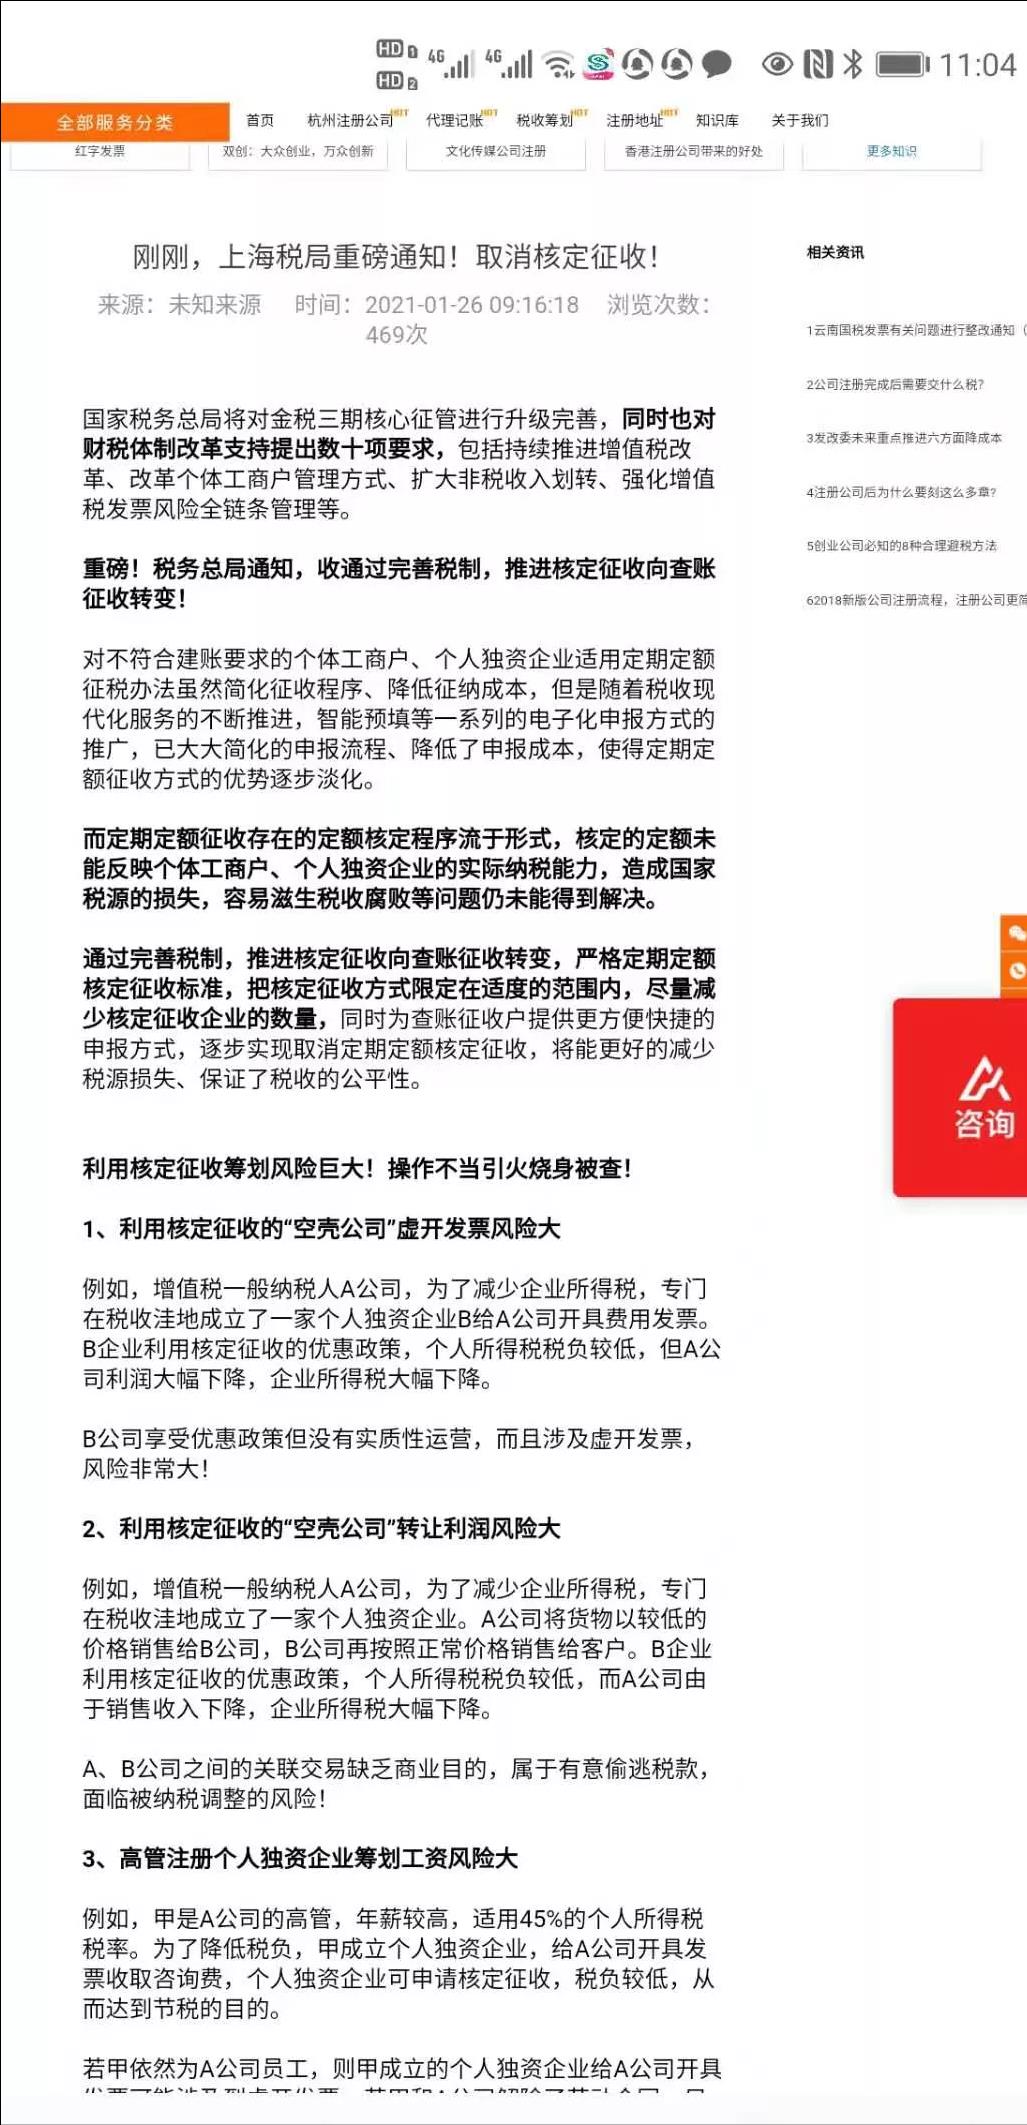 上海取消个人独资企业核定征收,7分钟前更新